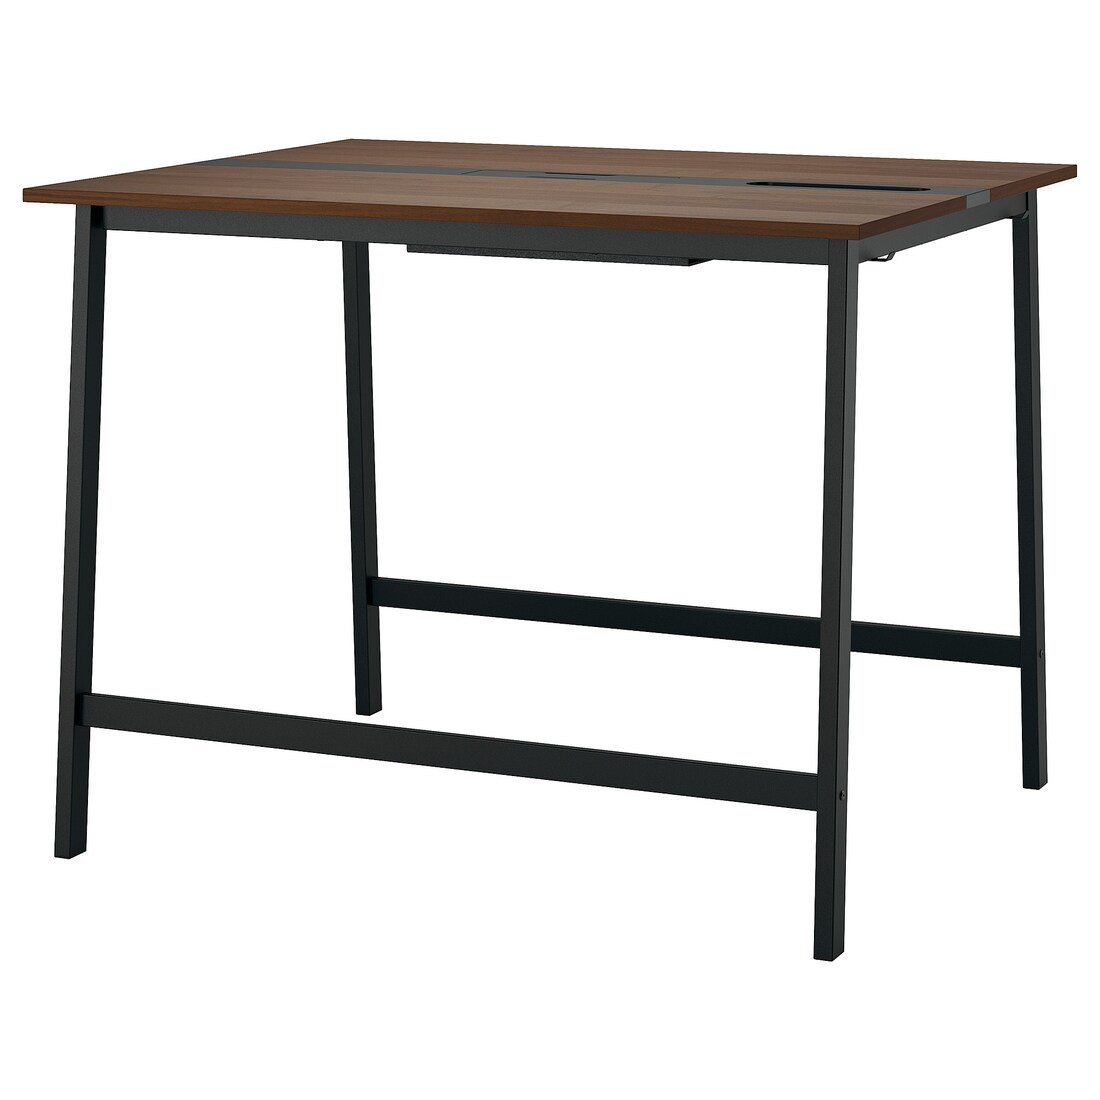 MITTZON конференц-стол, орех/черный, 140x108x105 см